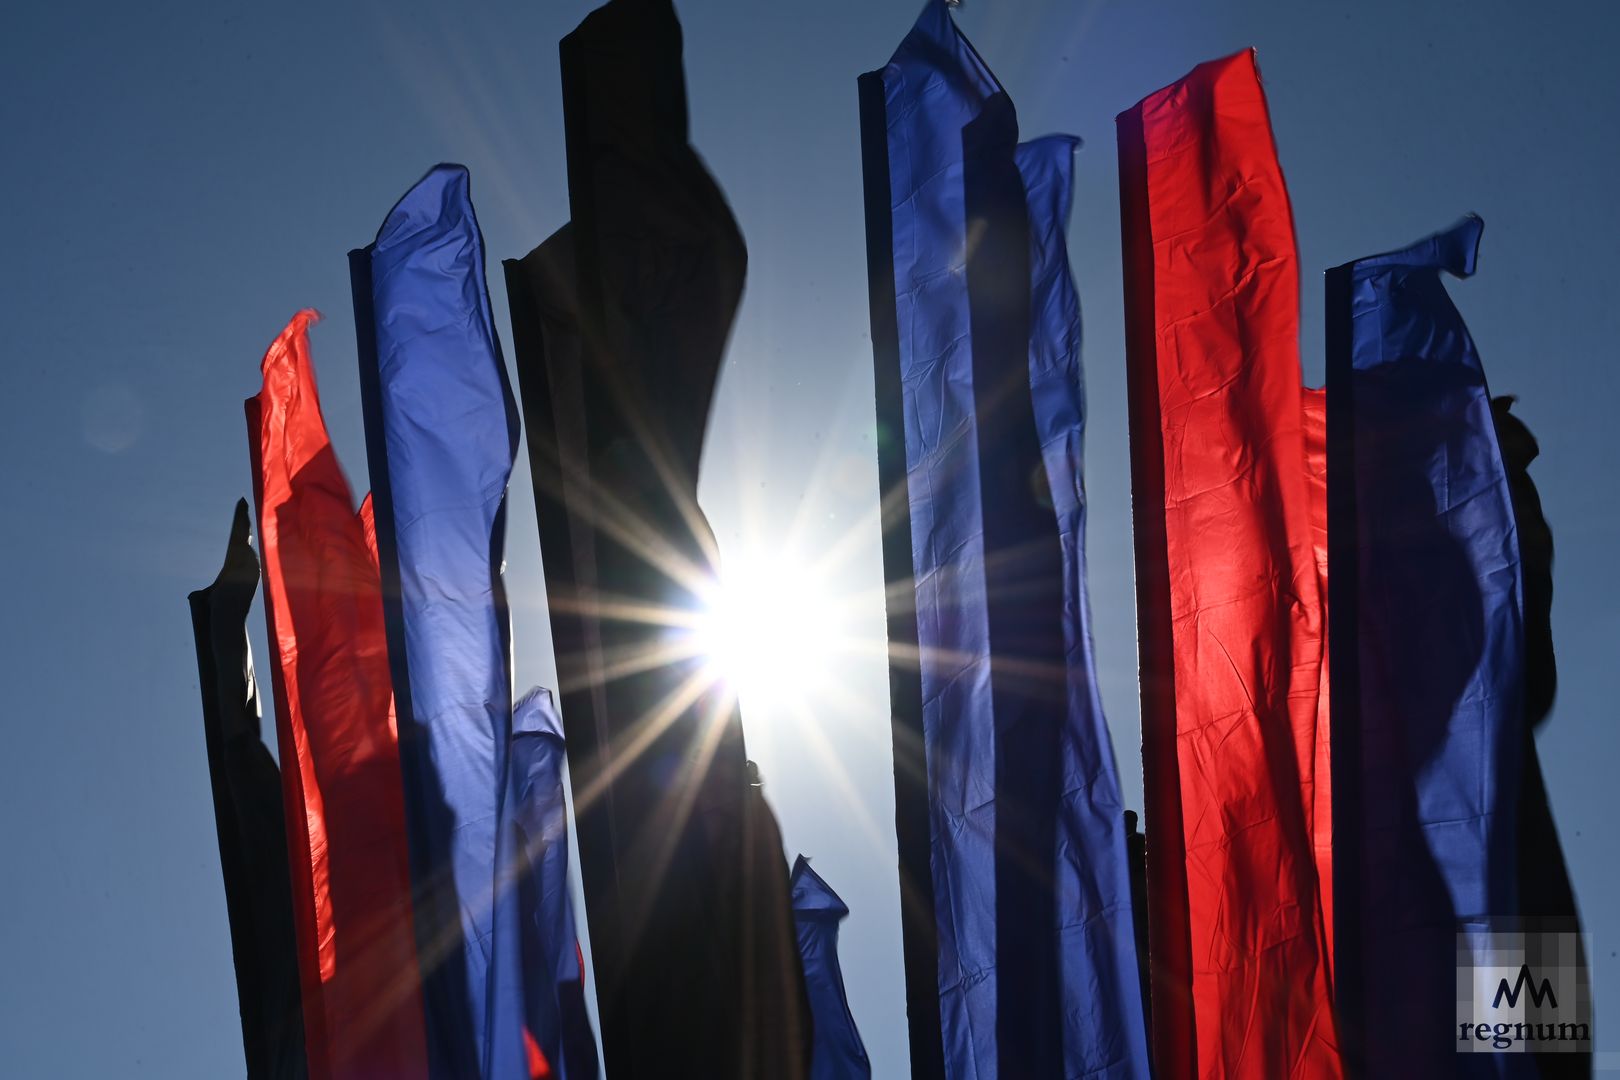 Над портом реяли разноцветные флаги. Флаг Донбасса. Флаг на флагштоке. Флаг Донецка. Флаг Донбасса фото.